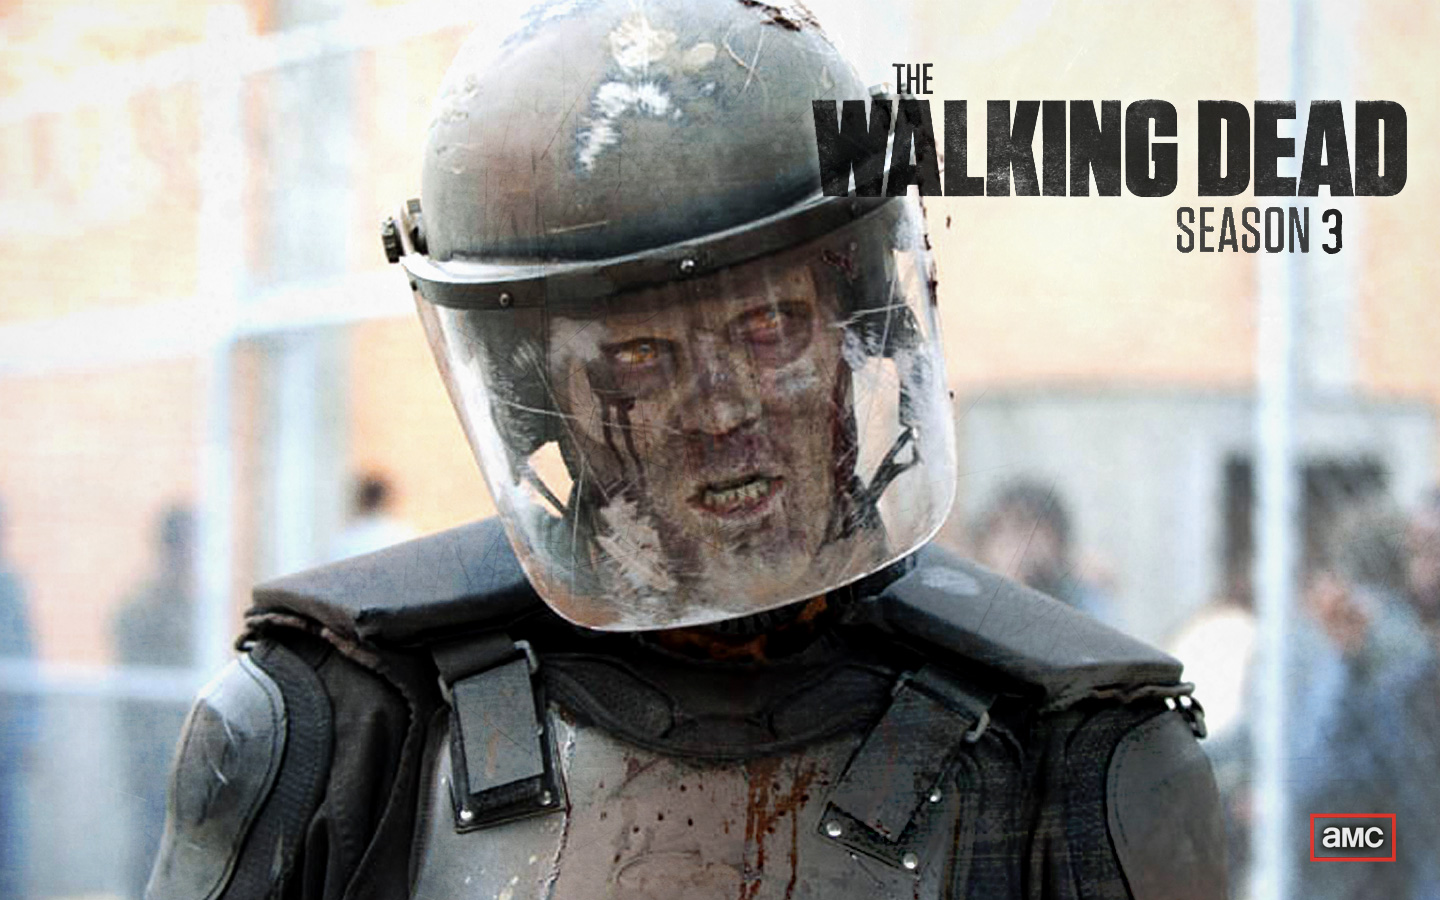 The Walking Dead Season 3 Wallpaper Zombies Pinterest